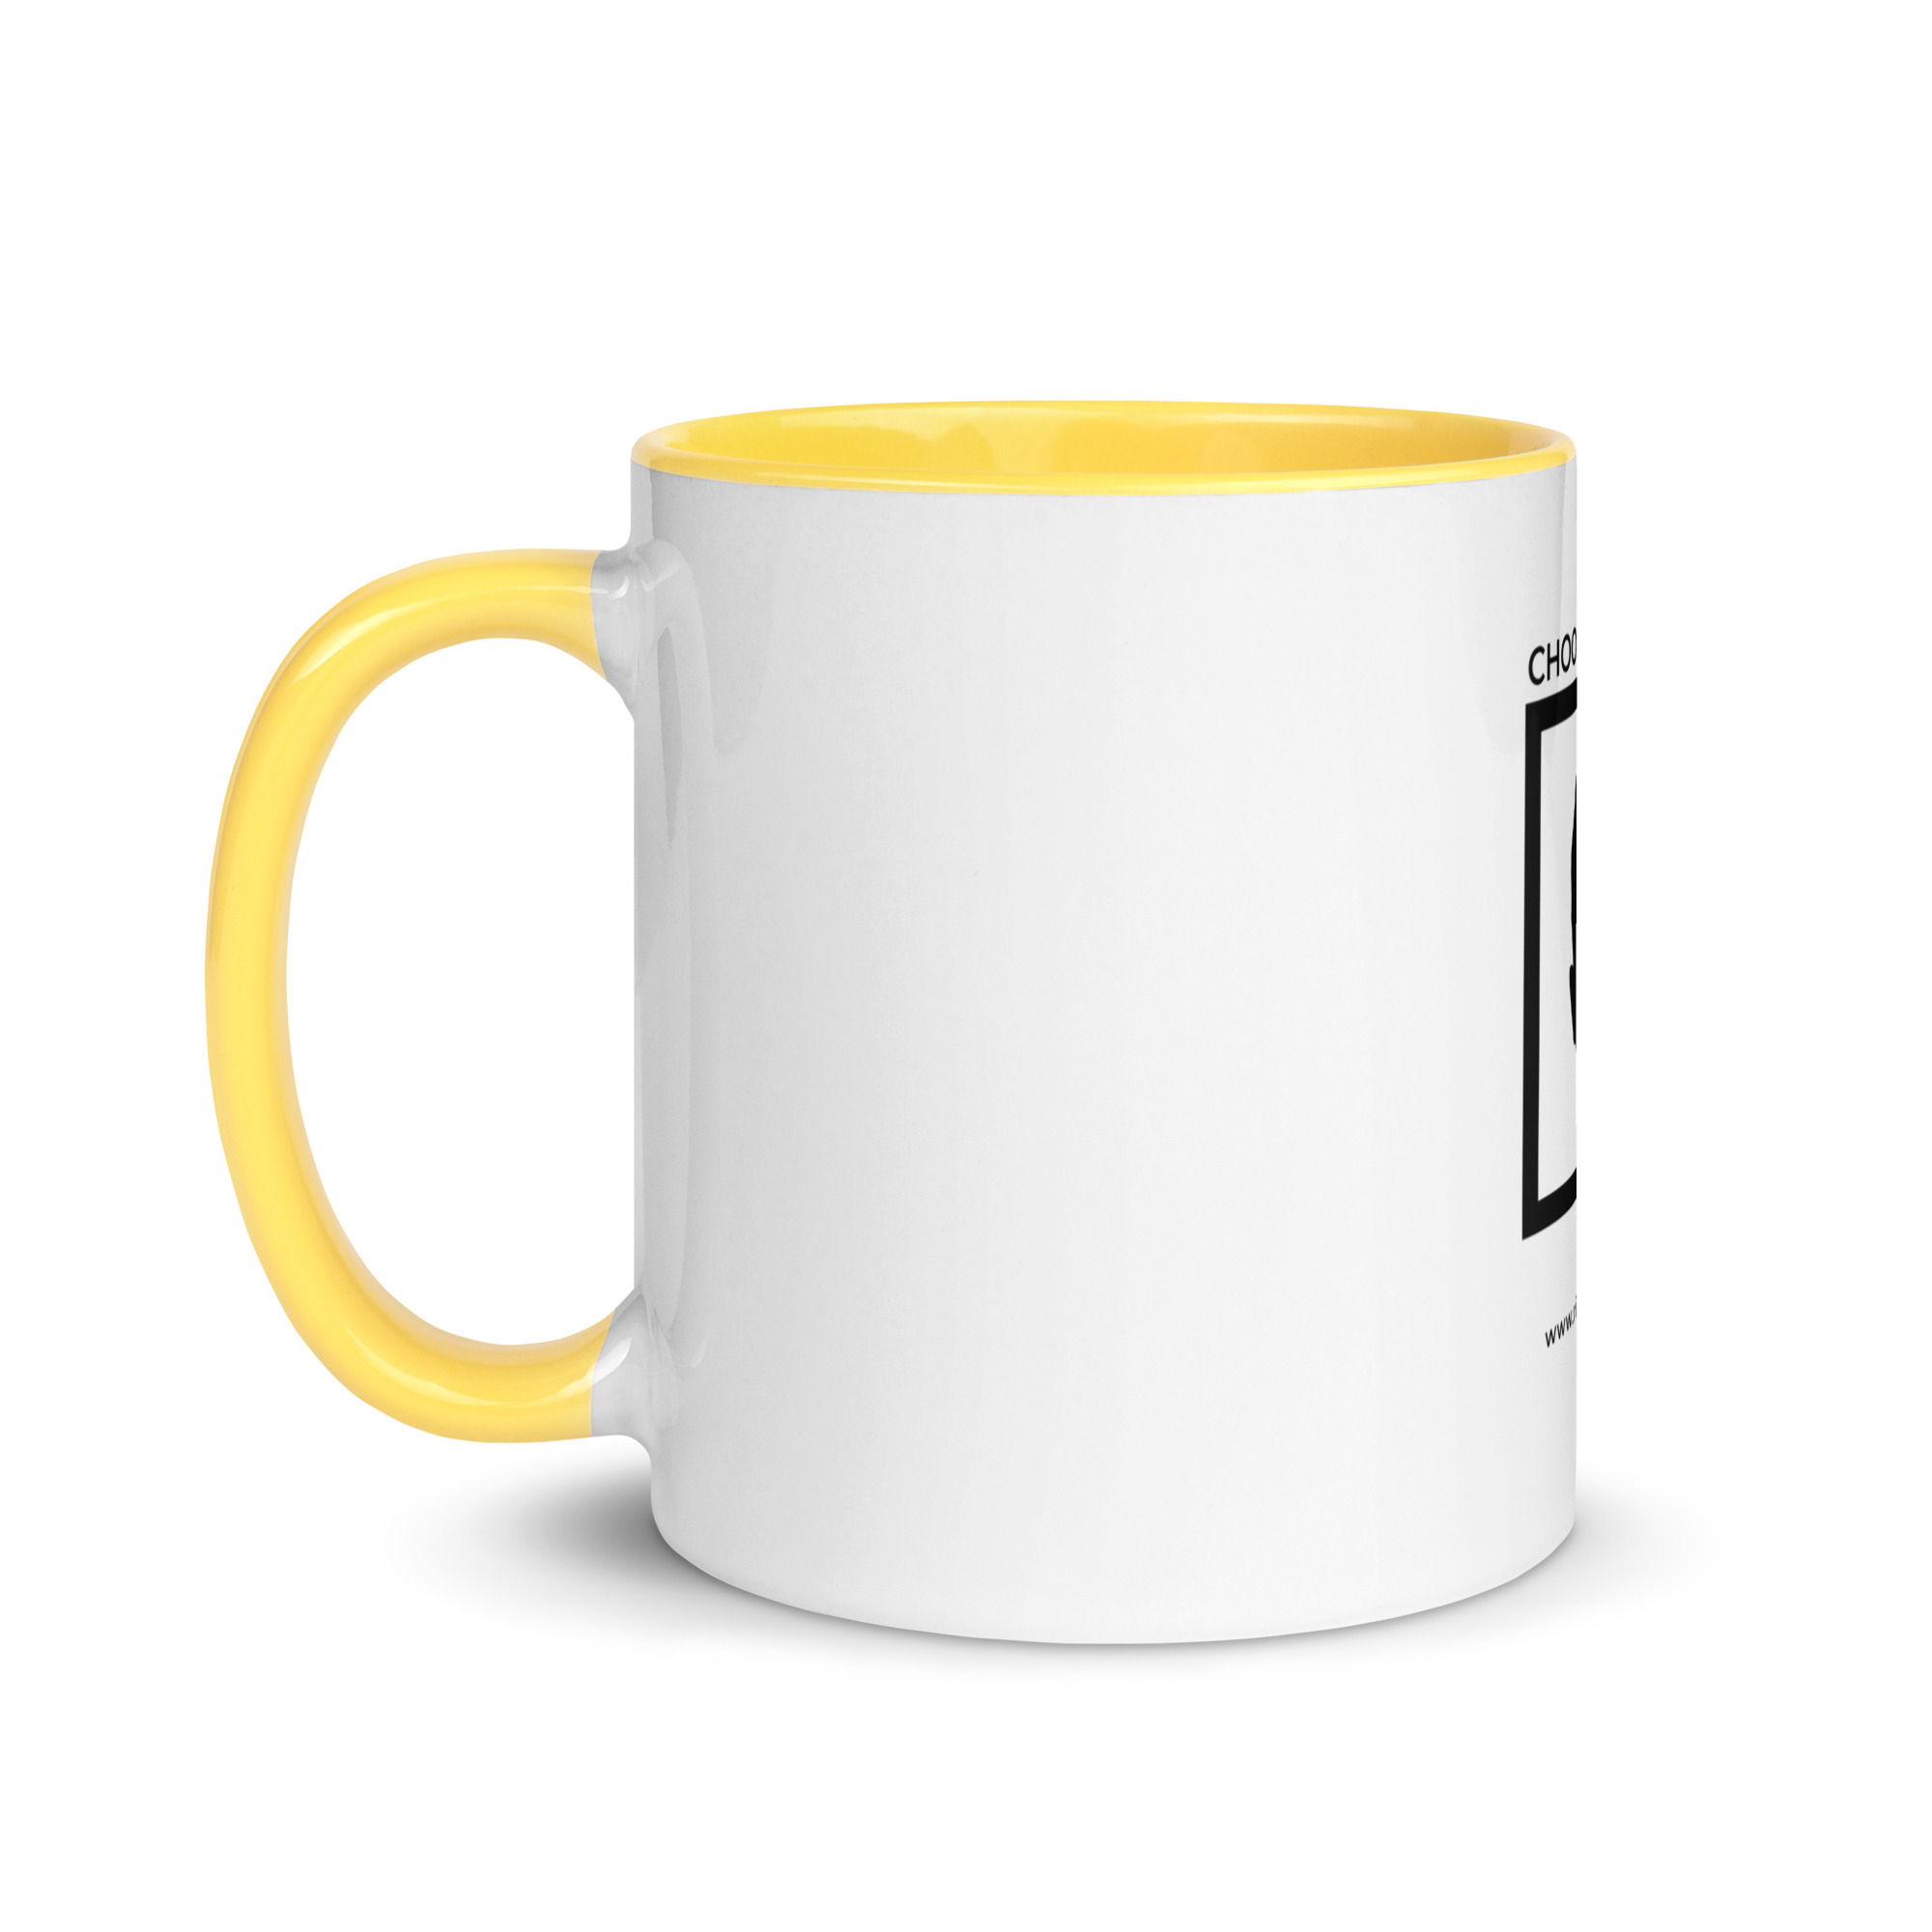 white-ceramic-mug-with-color-inside-yellow-11-oz-left-6522a1a40456b.jpg